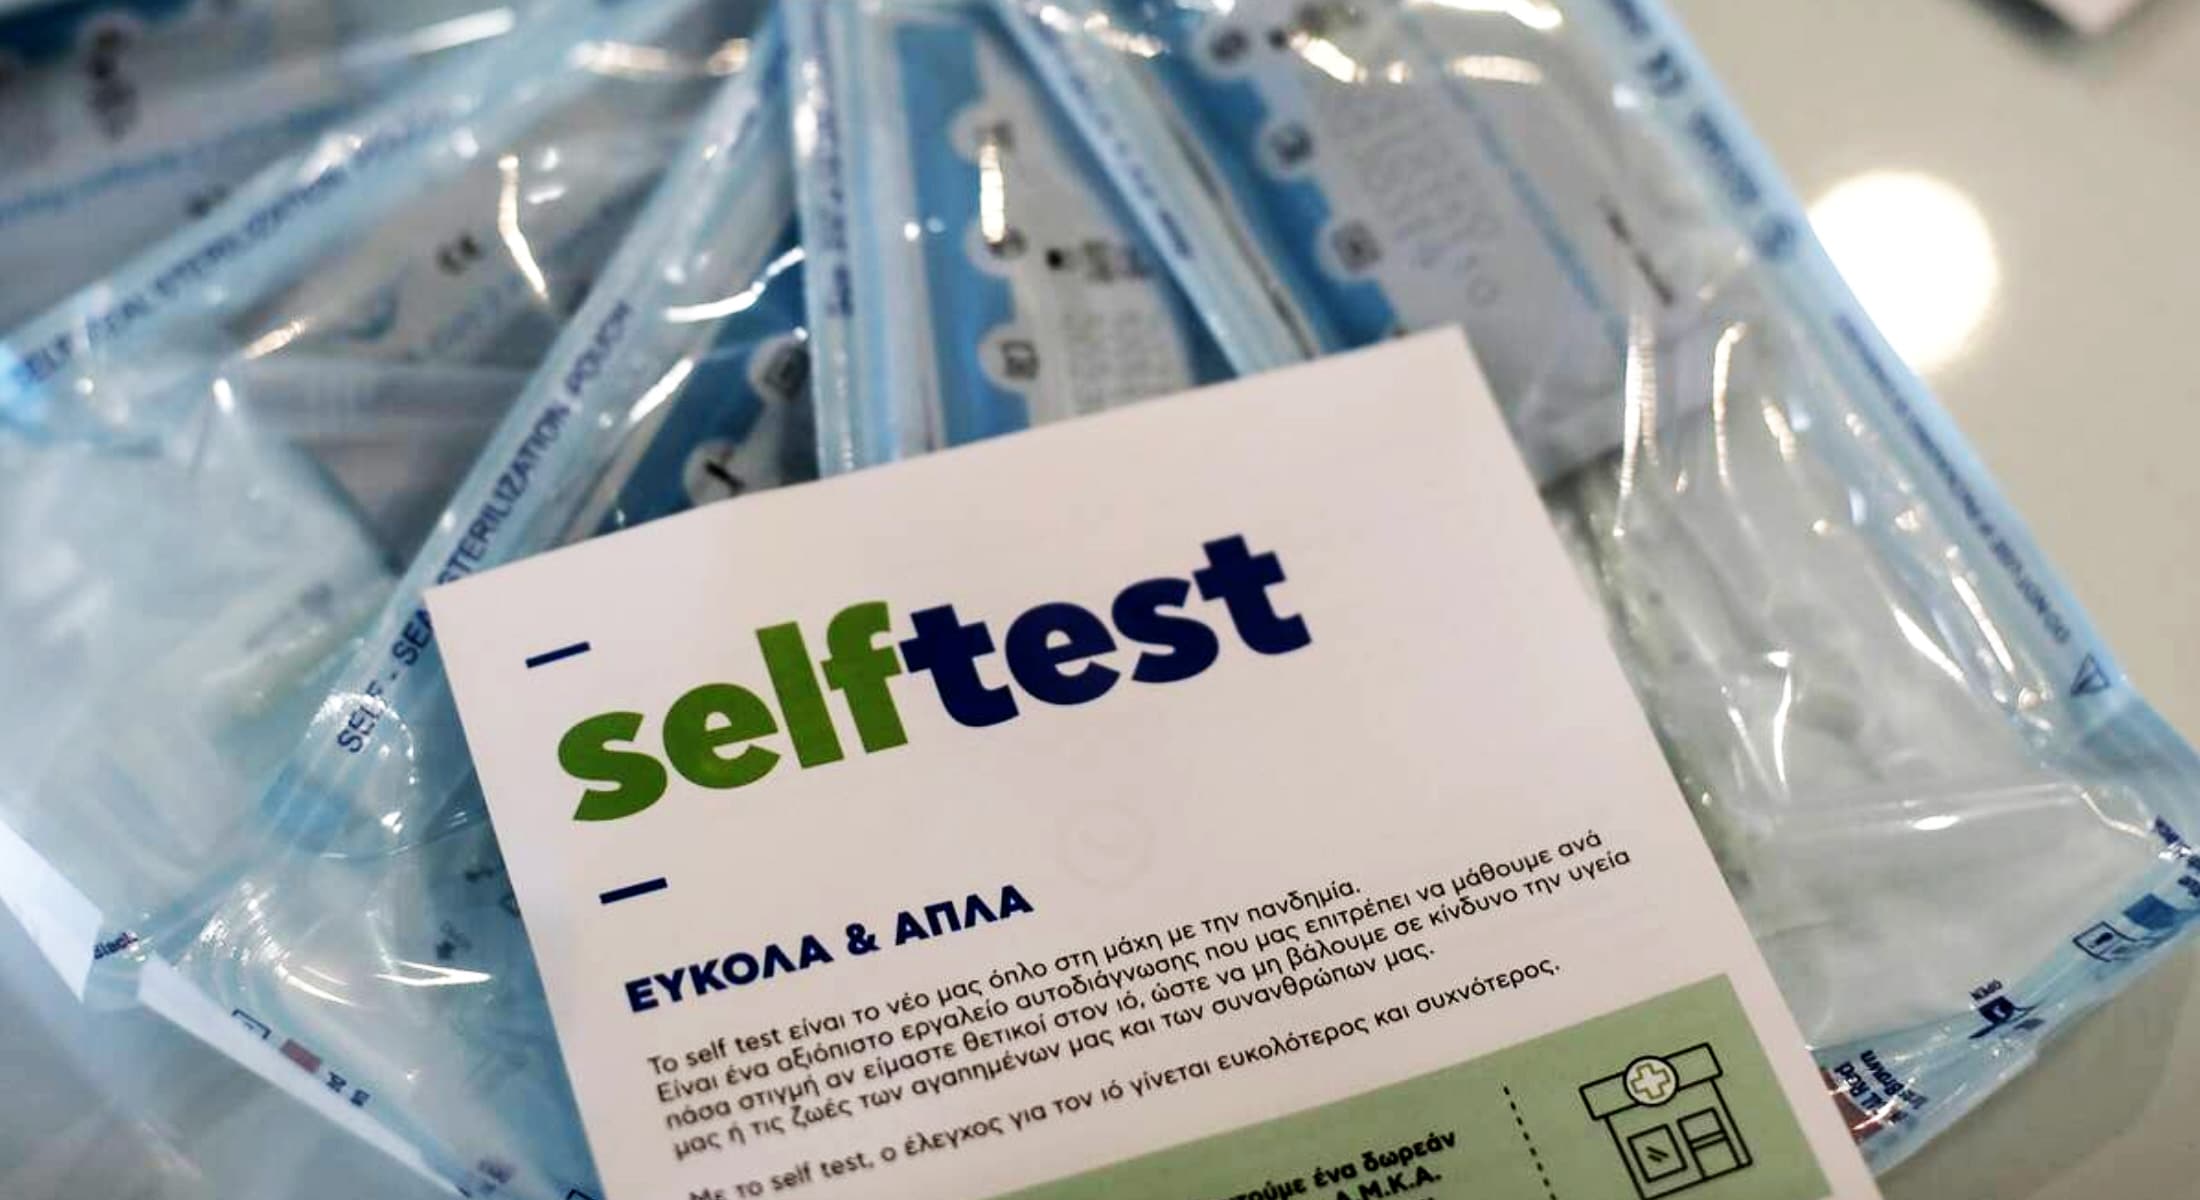 Διευκρινίσεις σχετικά με τη διάθεση των δωρεάν self test δίνουν από κοινού τα υπουργεία Υγείας και Παιδείας.